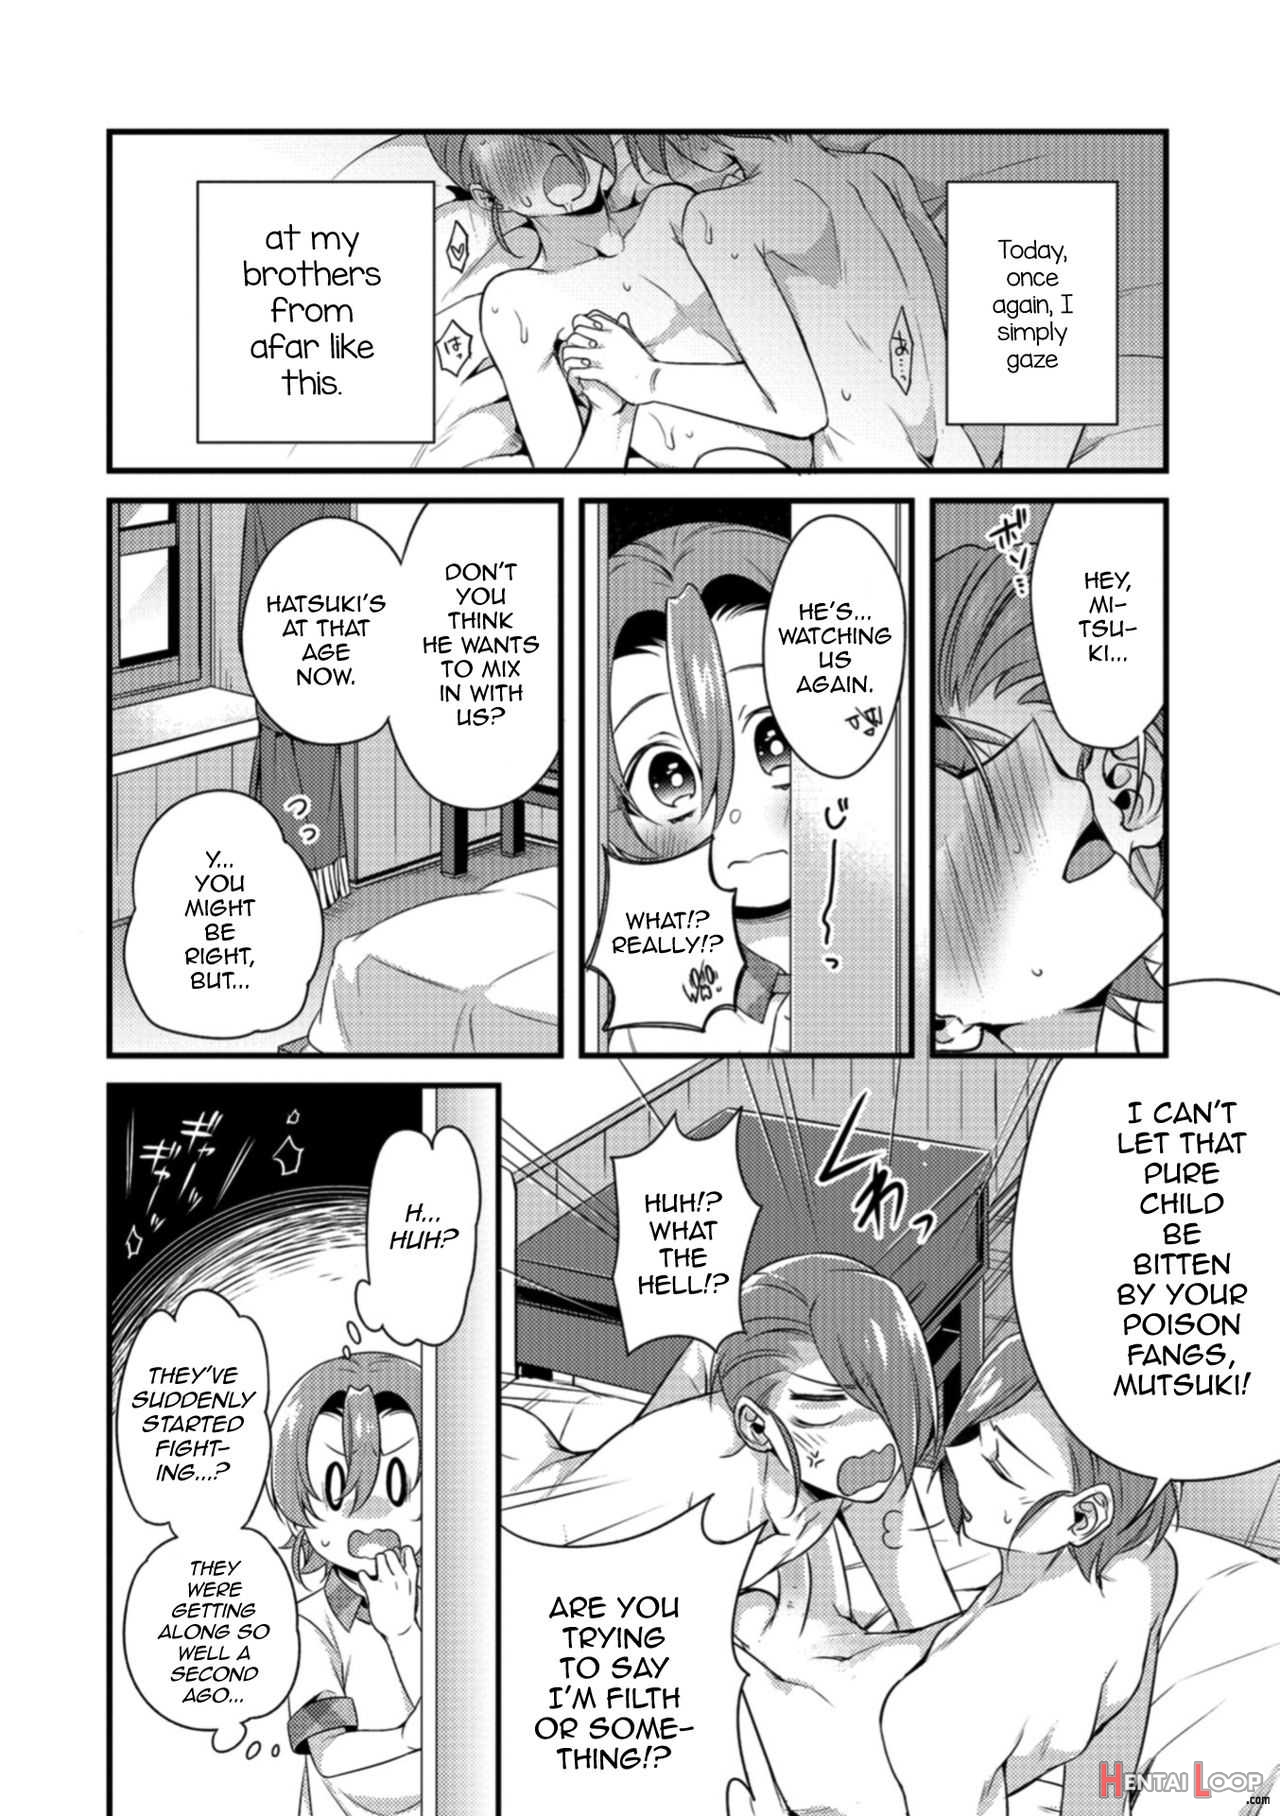 Tsunagare! Kyoudai No Wa page 6